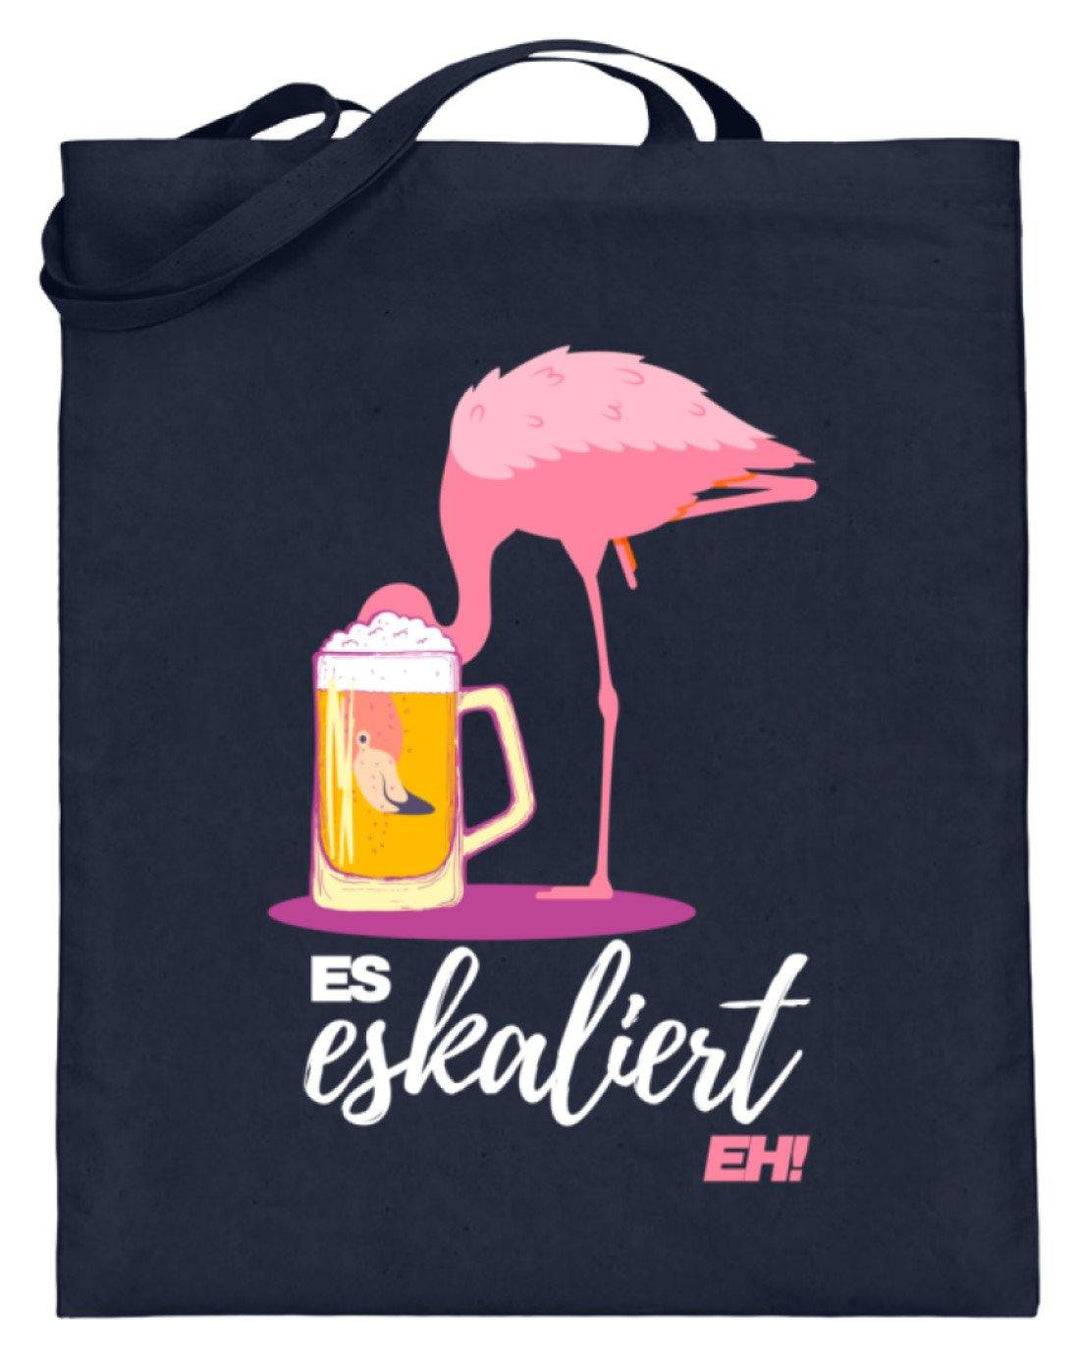 Es Eskaliert Eh - Flamingo  - Jutebeutel (mit langen Henkeln) - Words on Shirts Sag es mit dem Mittelfinger Shirts Hoodies Sweatshirt Taschen Gymsack Spruch Sprüche Statement